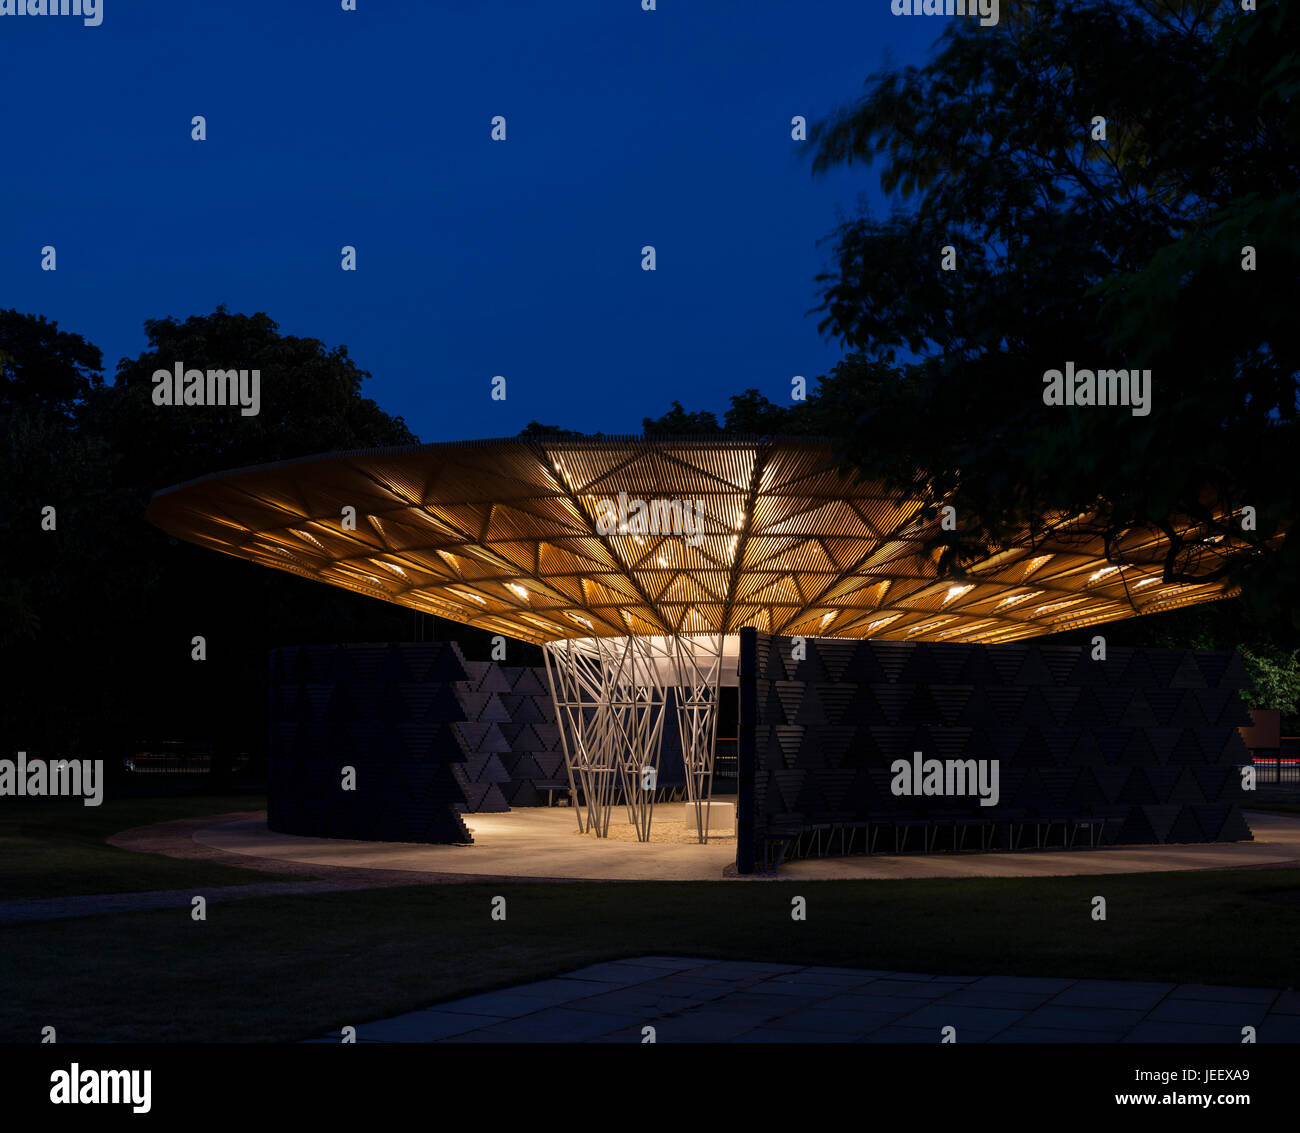 Nachtansicht der Zeit. Serpentin Sommer Pavillon 2017, London, Vereinigtes Königreich. Architekt: Diebedo Francis Kéré, 2017. Stockfoto